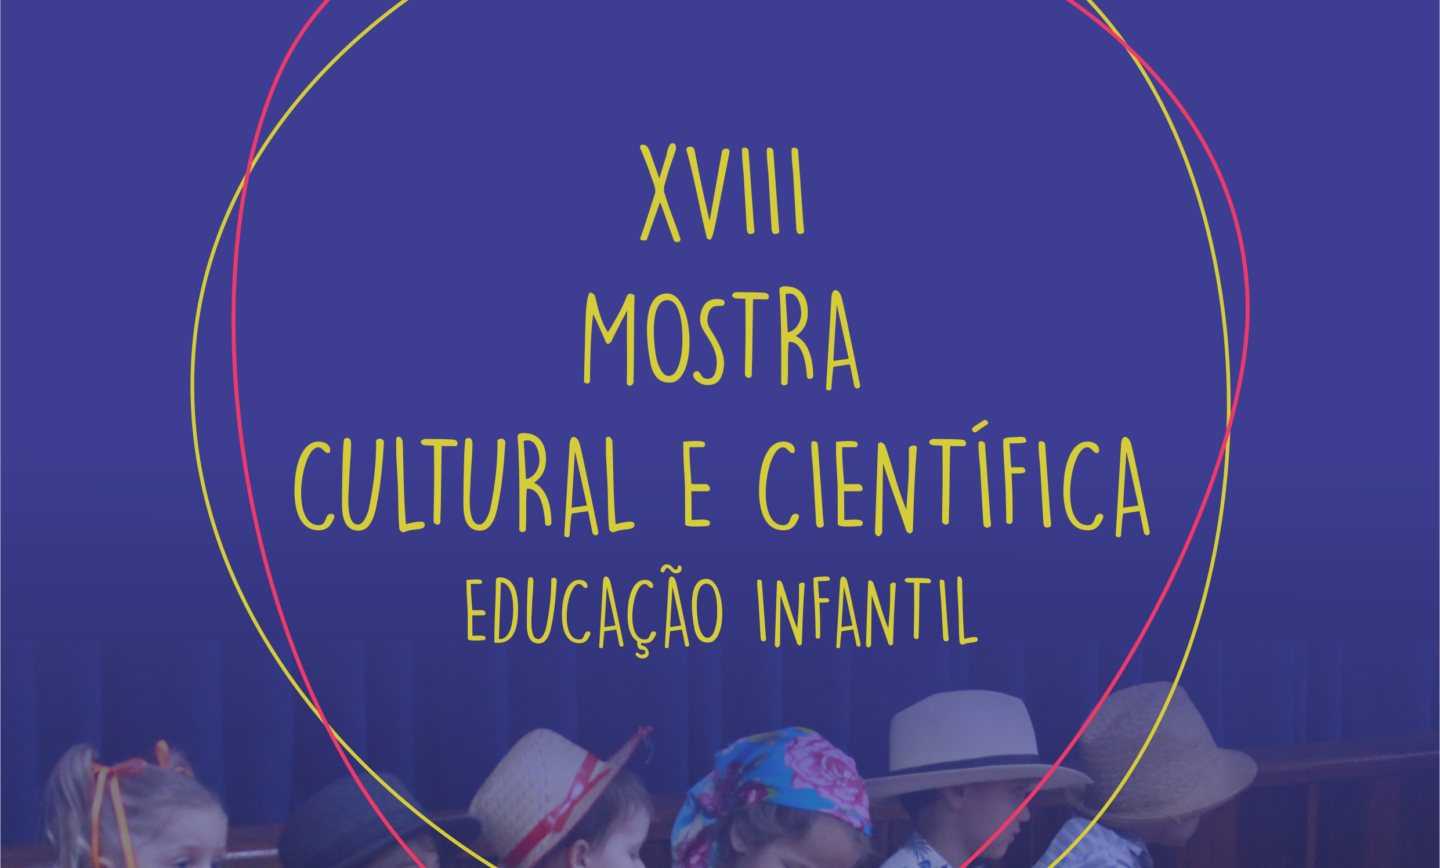 XVIII MOSTRA CULTURAL 2019 – EDUCAÇÃO INFANTIL